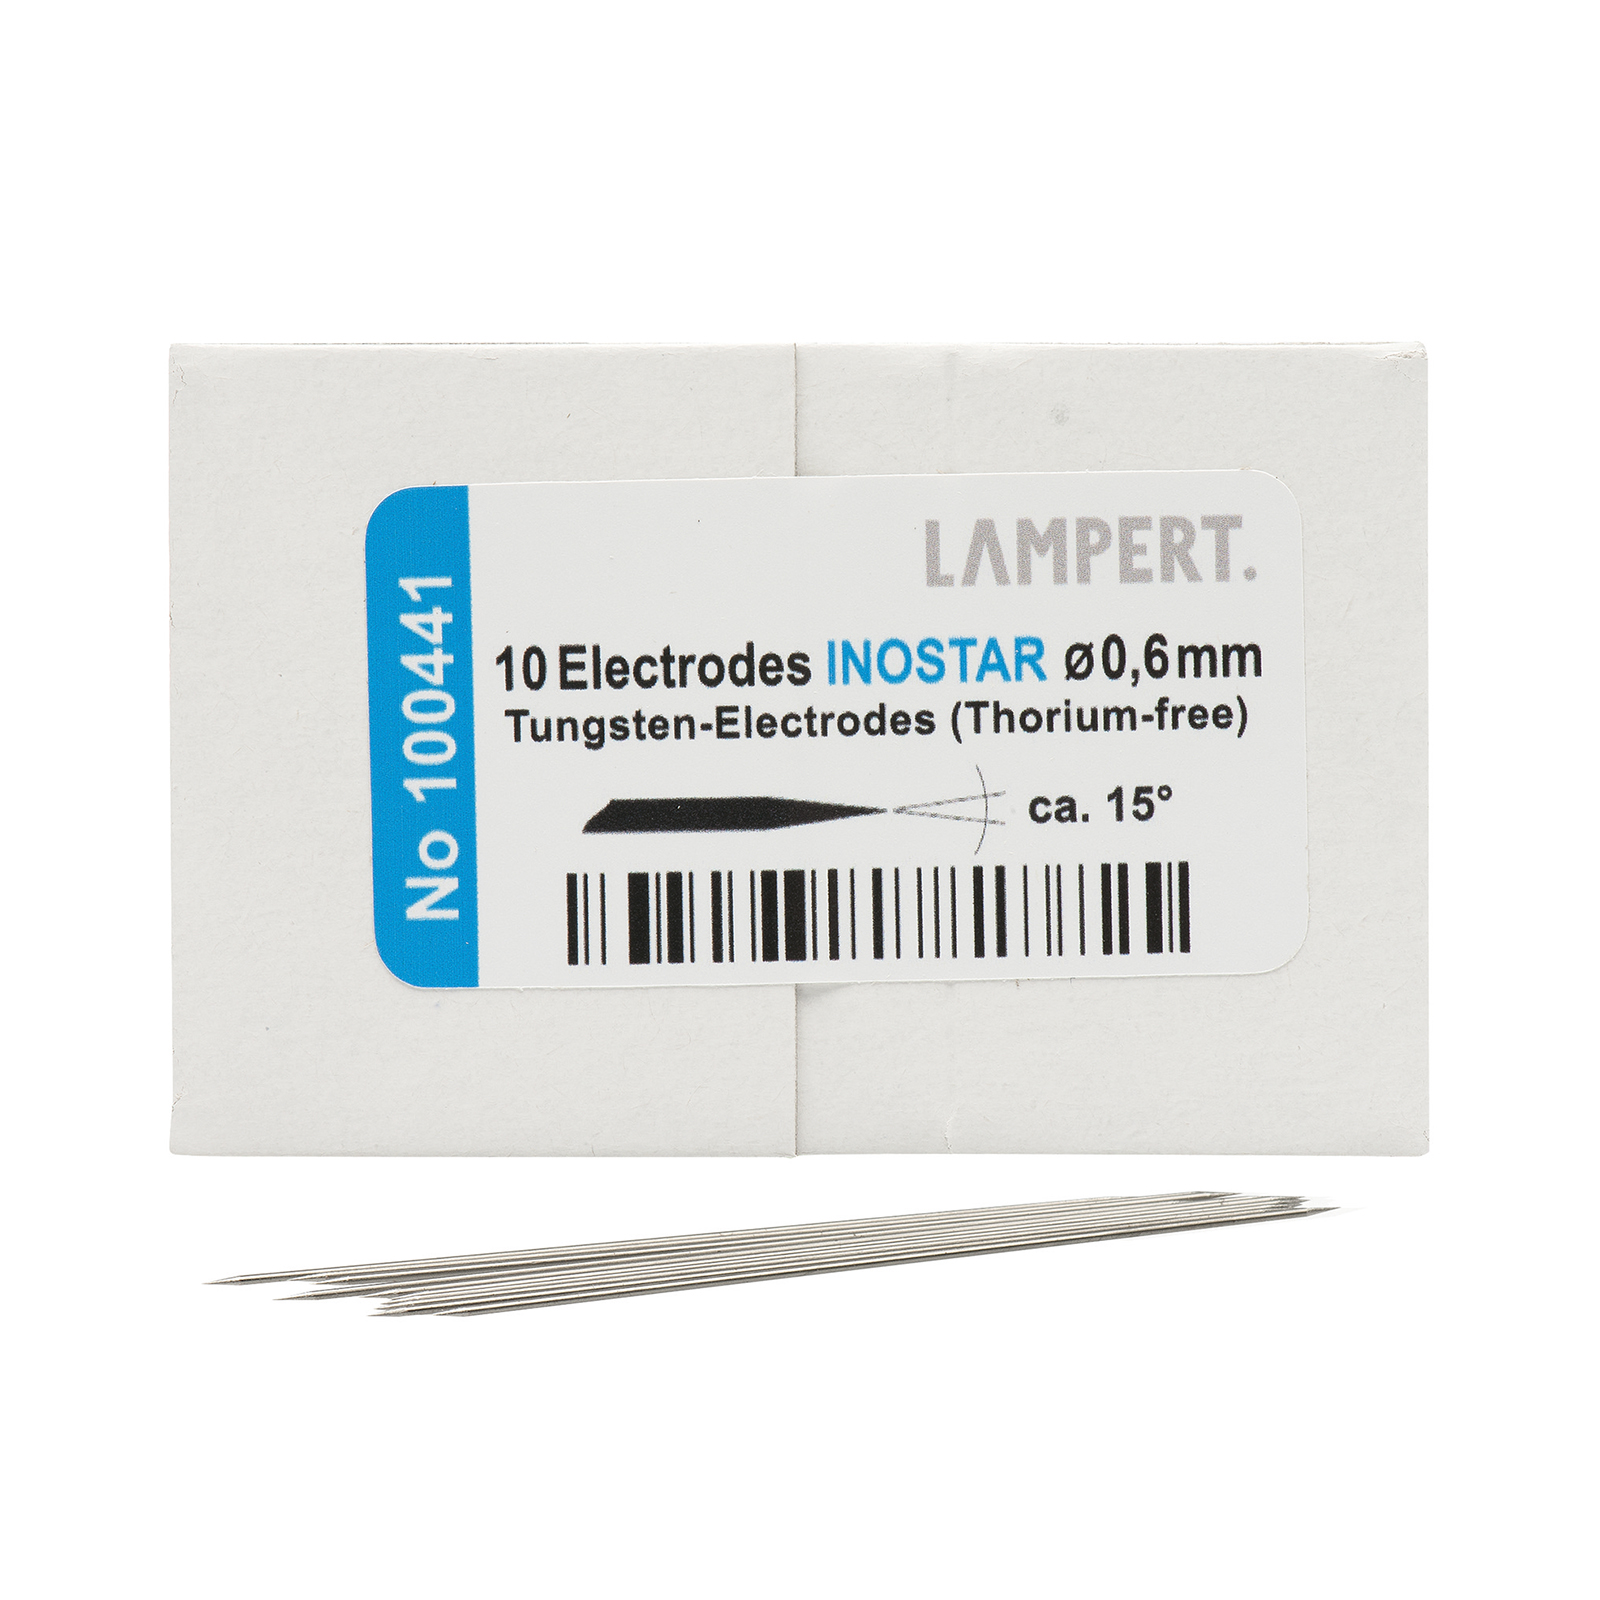 Lampert Inostar Spezialelektroden, 0,6 x 50 mm - 10 Stück